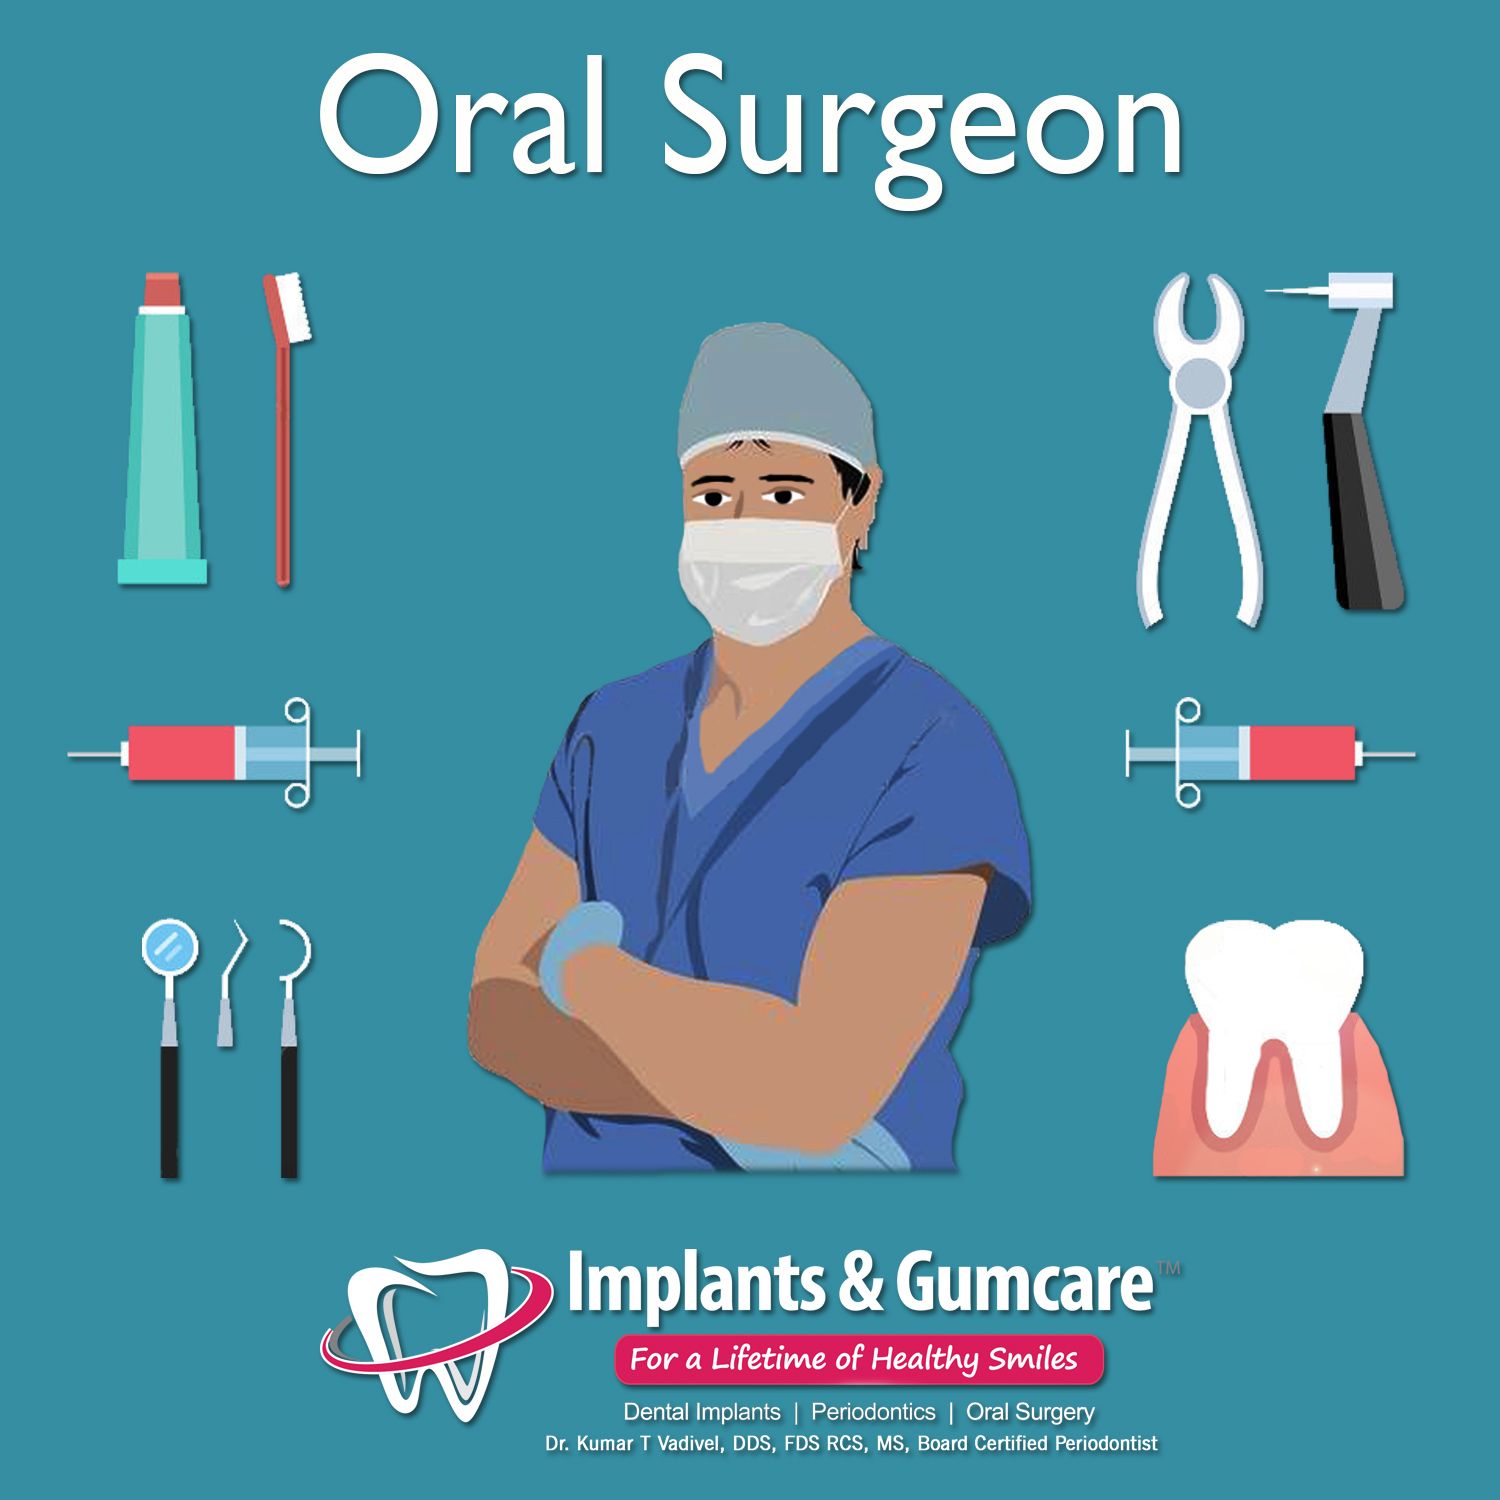 Oral surgeon job description